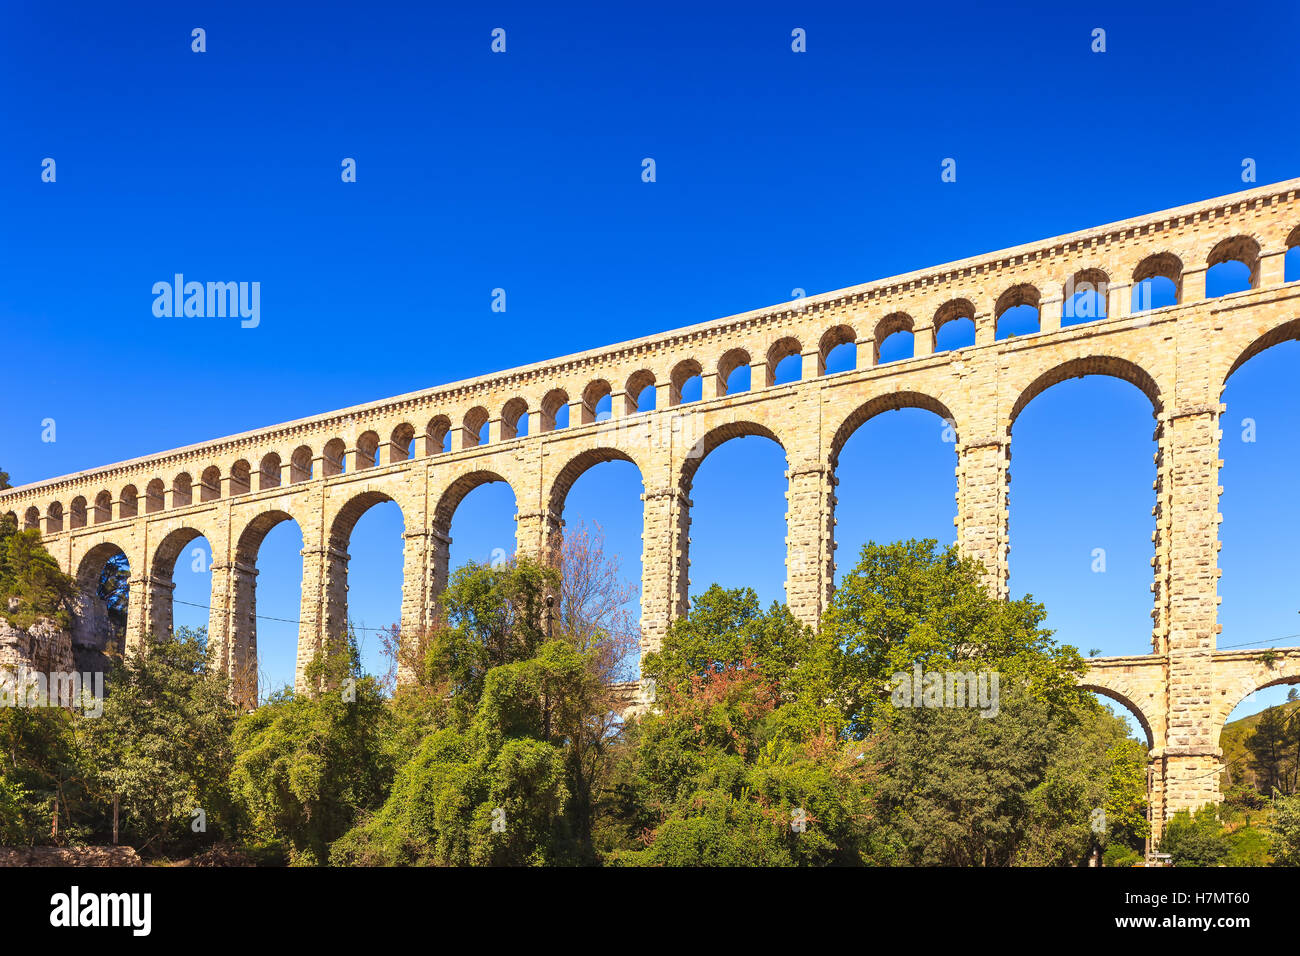 Aqueduc de roquefavour monument historique Ventabren, Aix en Provence, France, Europe. Banque D'Images